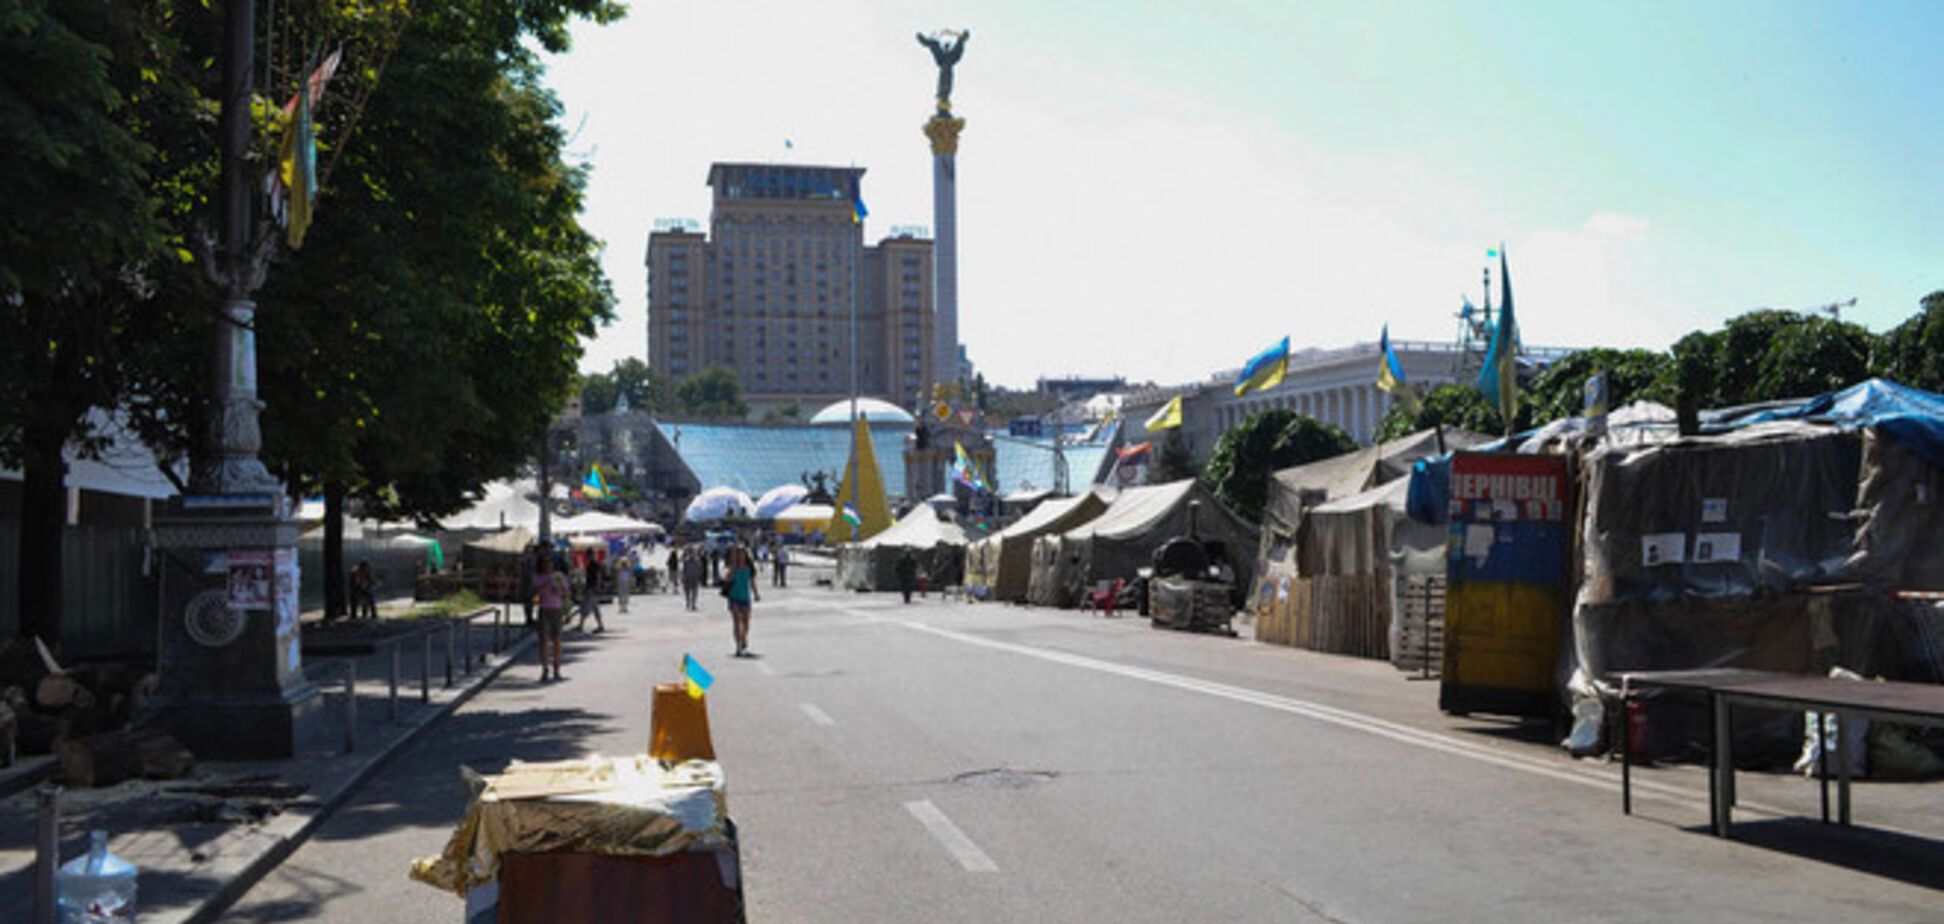  82% киевлян осудили наличие палаточного городка на Майдане